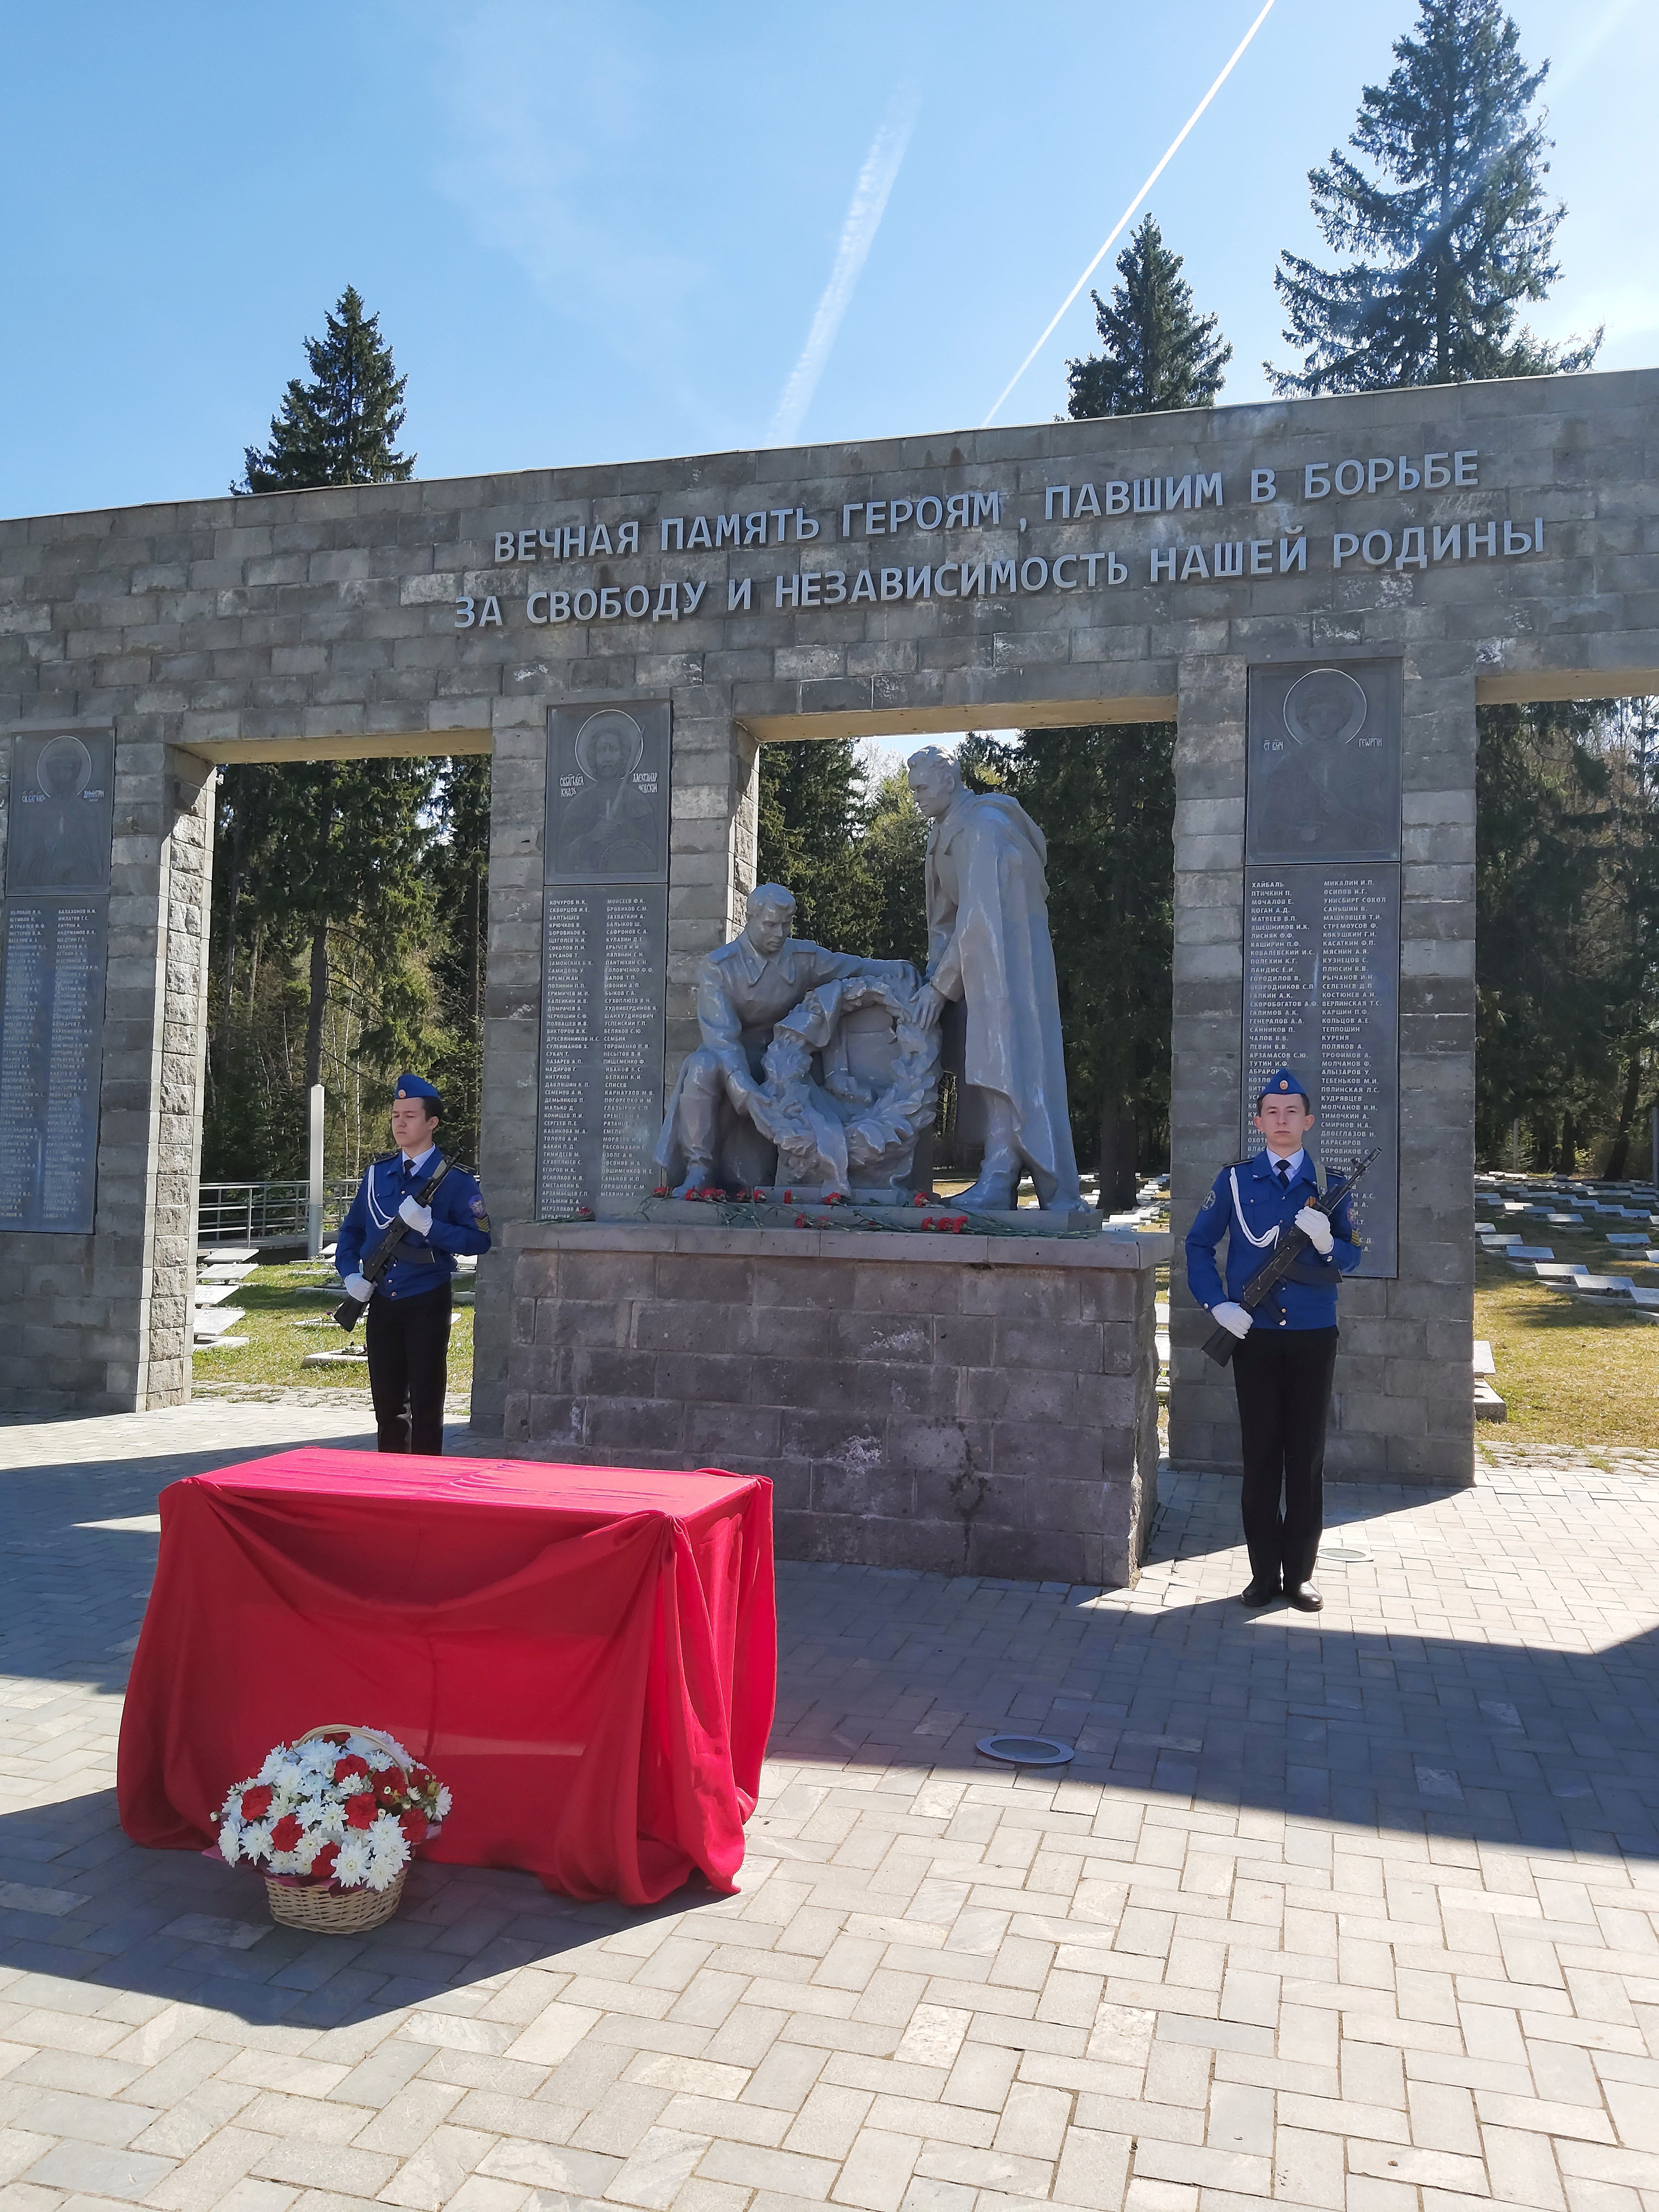 

На Северном кладбище Ижевска предали земле останки Николая Пасынкова, погибшего в 1942 году

